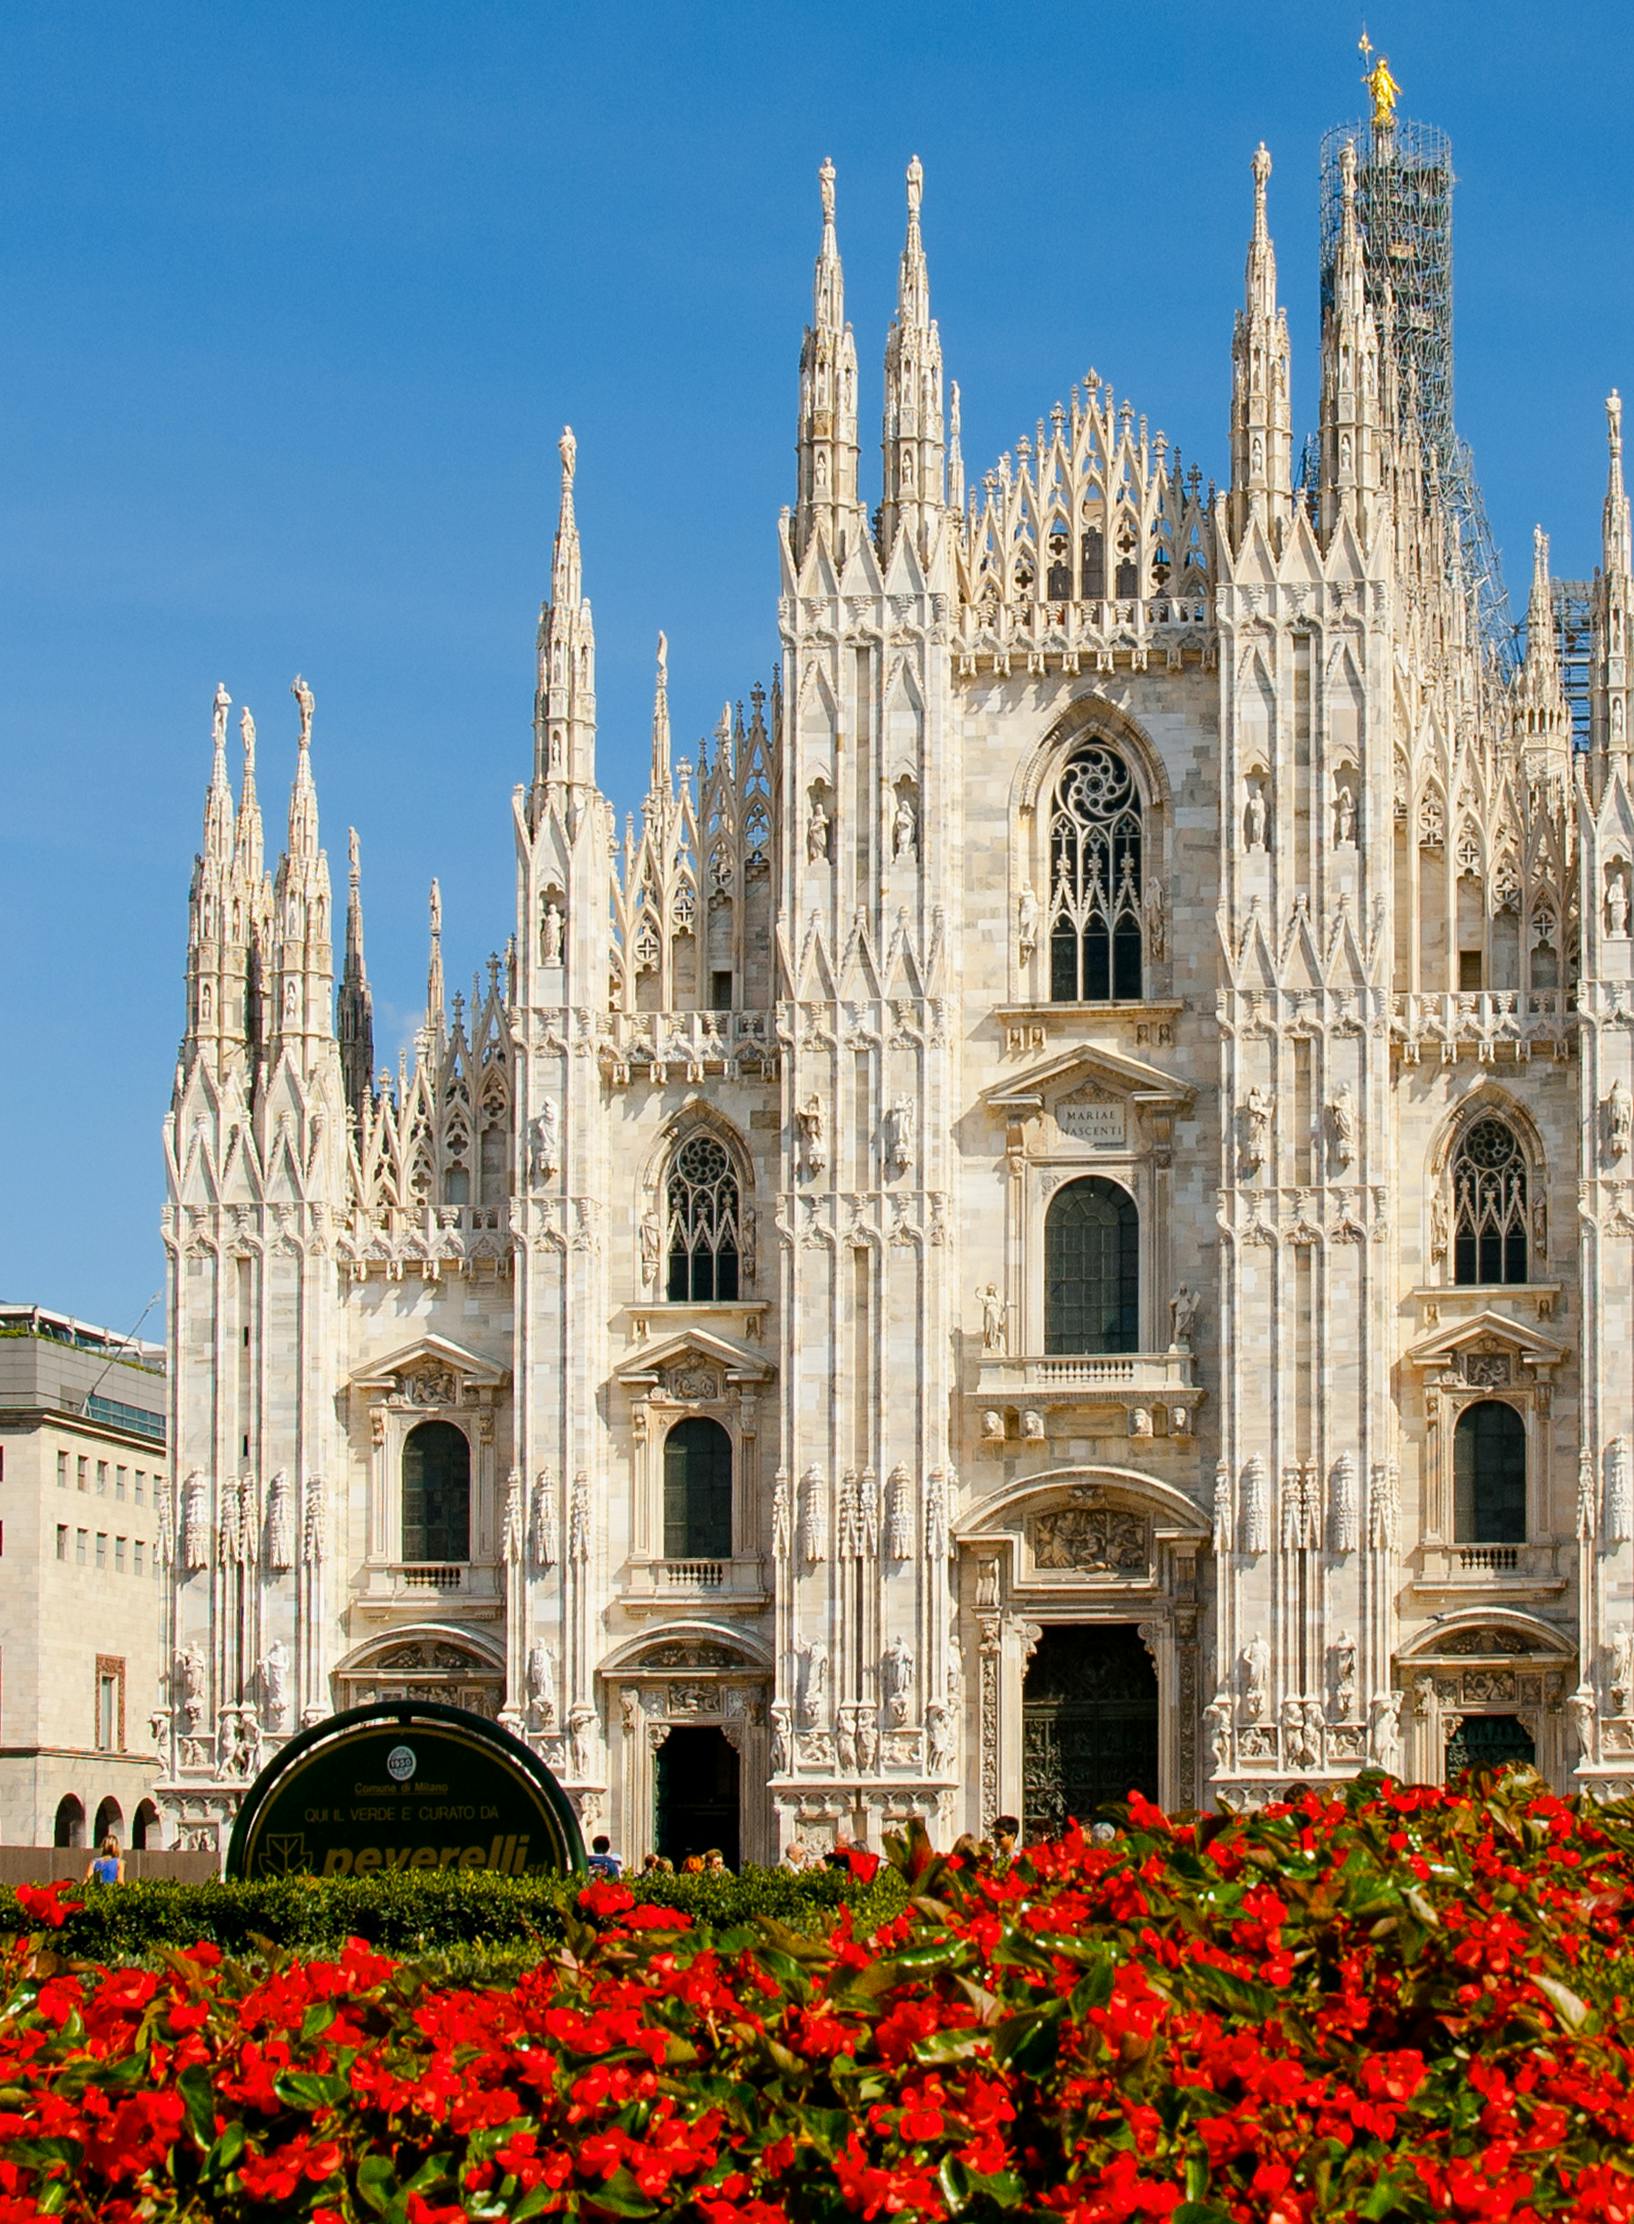 Scopri Milano e trova oltre 2835 proprietá.